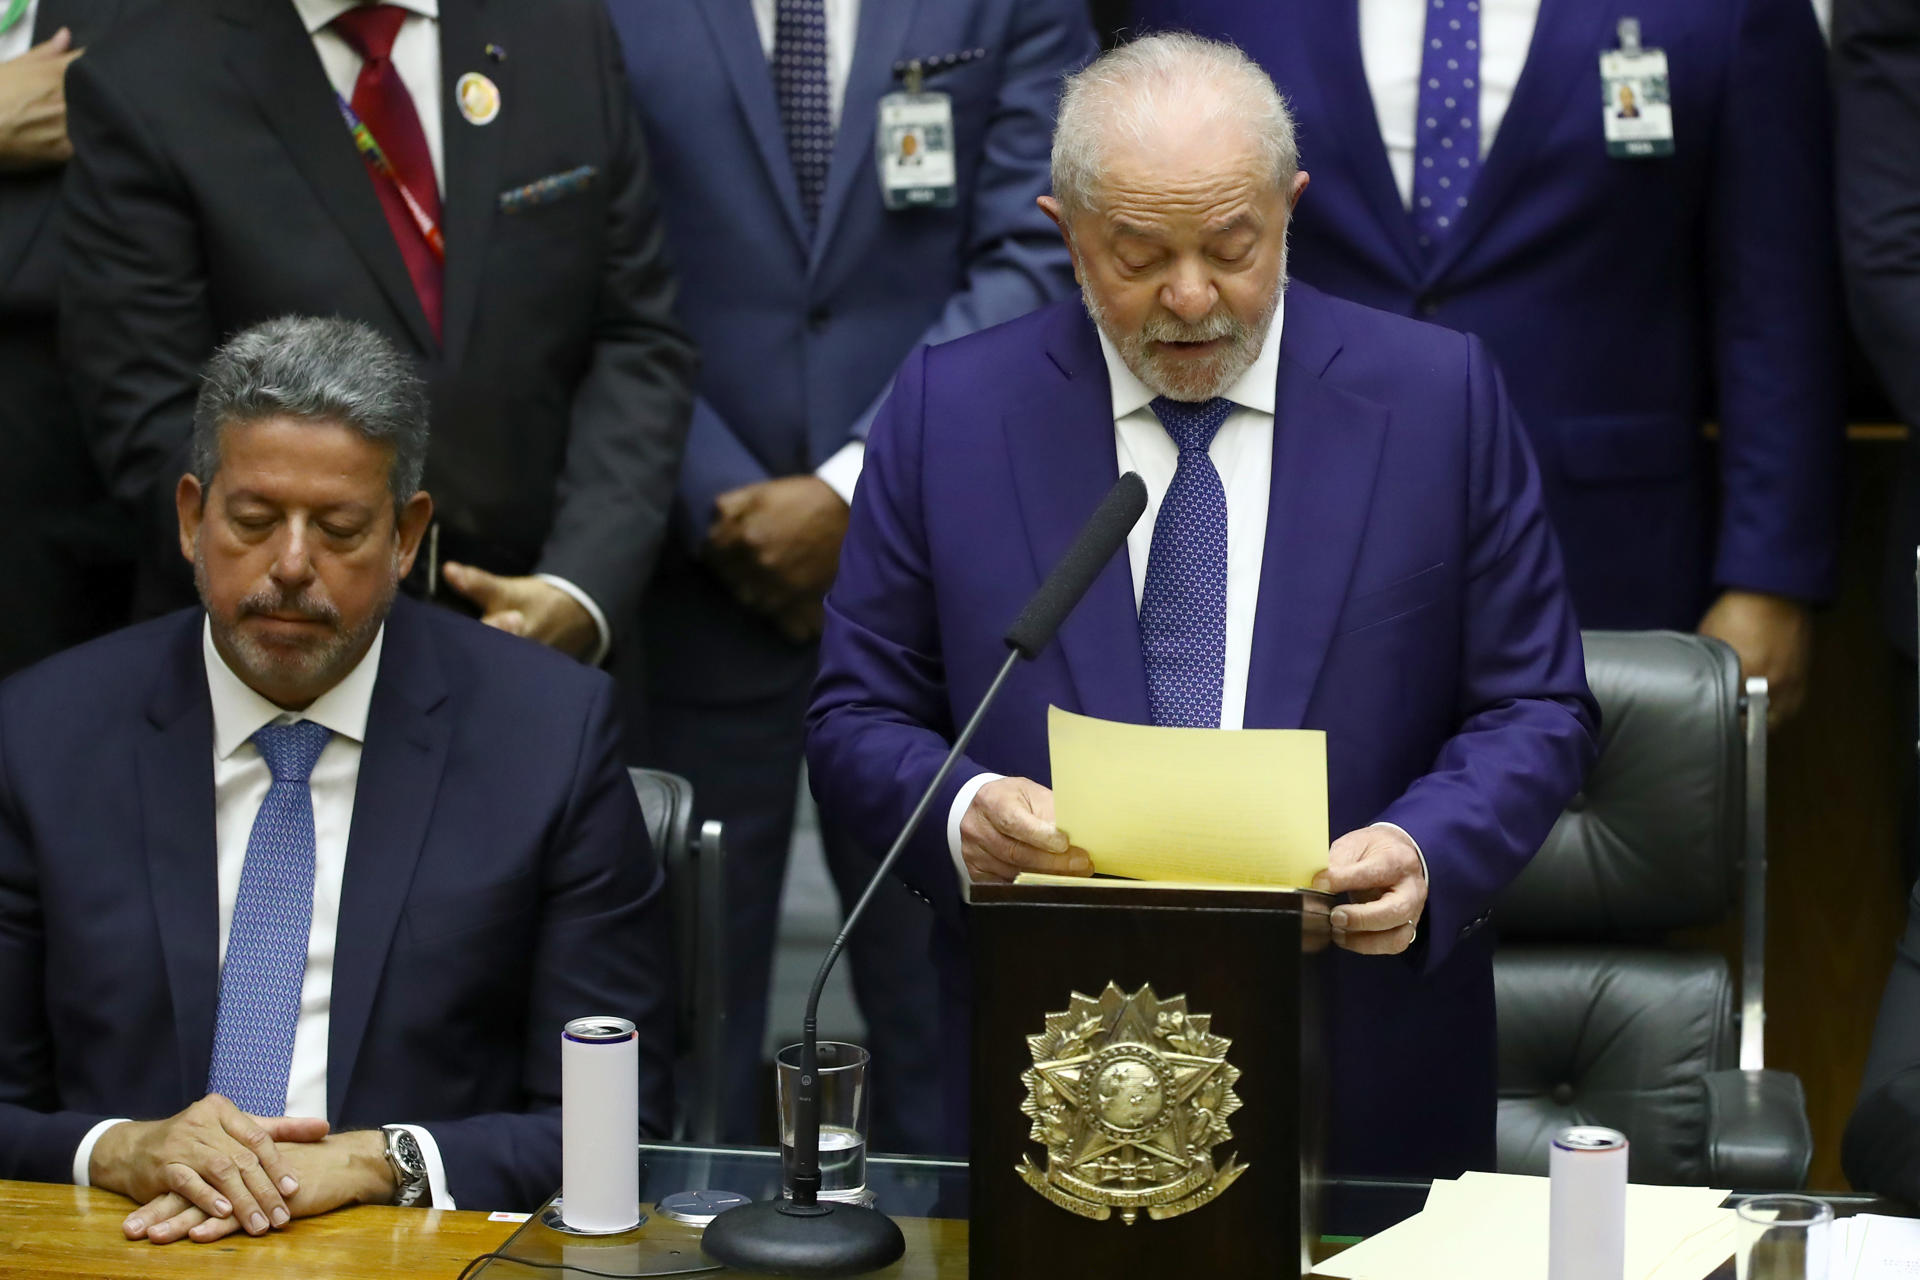 El presidente de Brasil, Luiz Inácio Lula da Silva, en una imagen de archivo. EFE/ Jarbas Oliveira